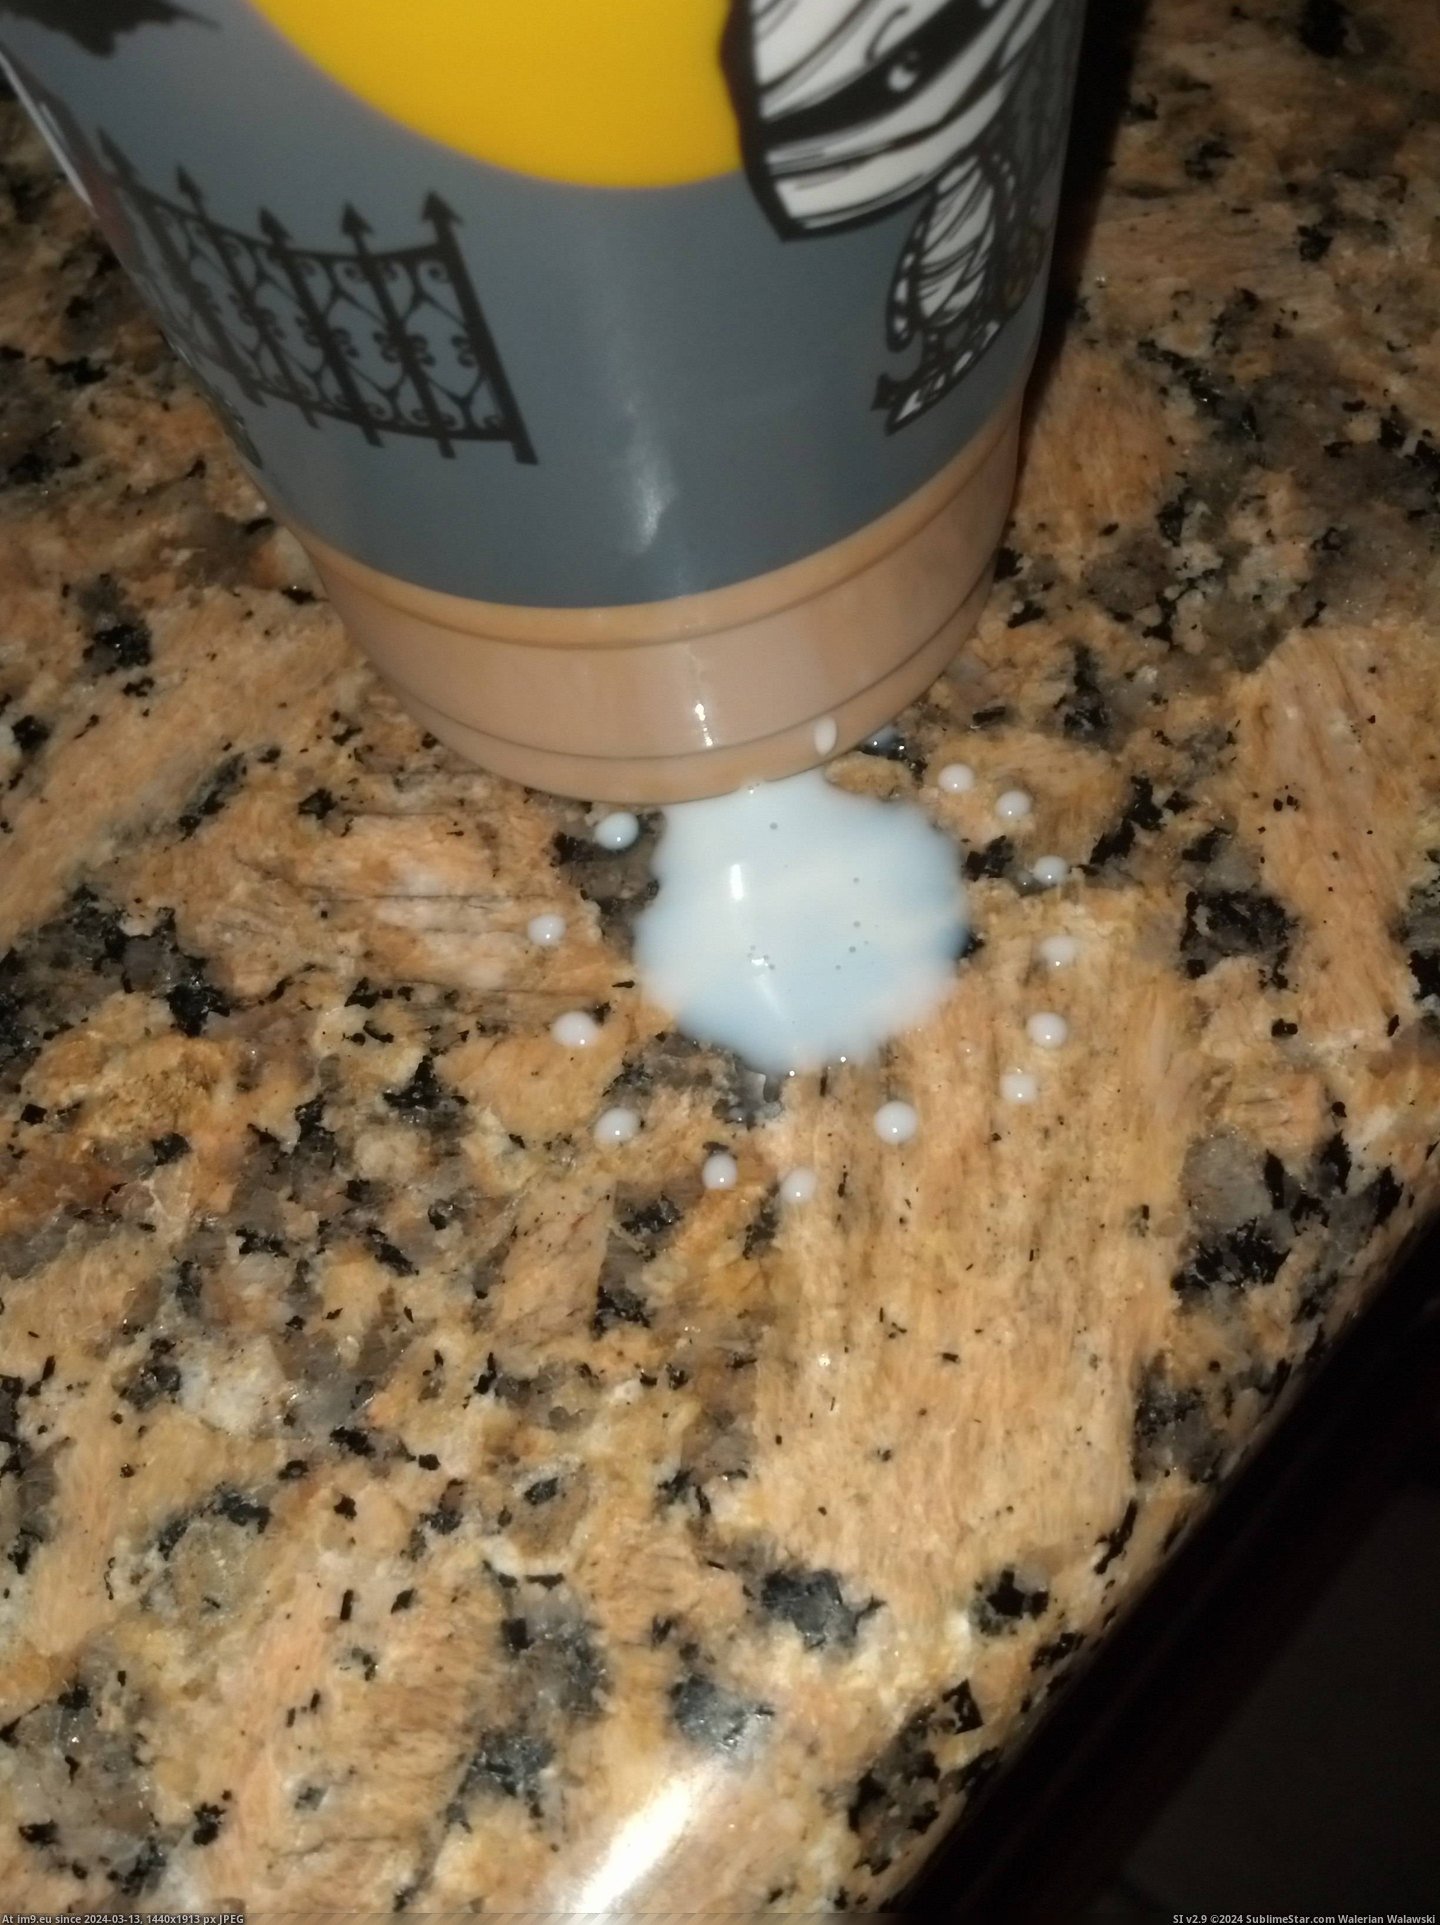 #Milk #Spilled #Droplet #Cool [Mildlyinteresting] Spilled some milk and it made a cool droplet. Pic. (Изображение из альбом My r/MILDLYINTERESTING favs))